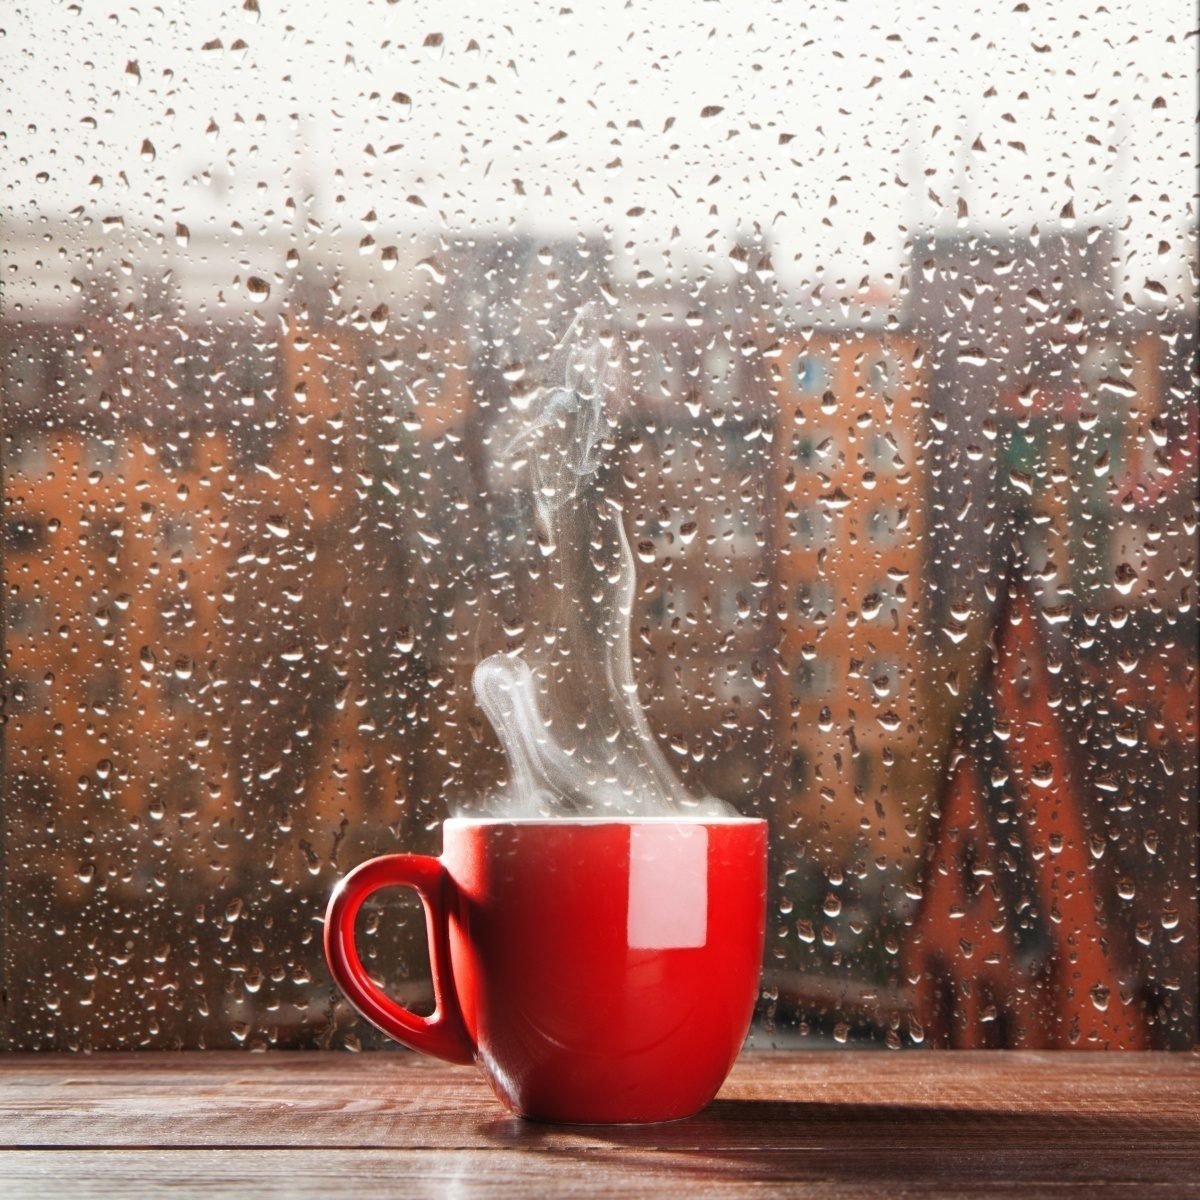 осень утро дождь картинки